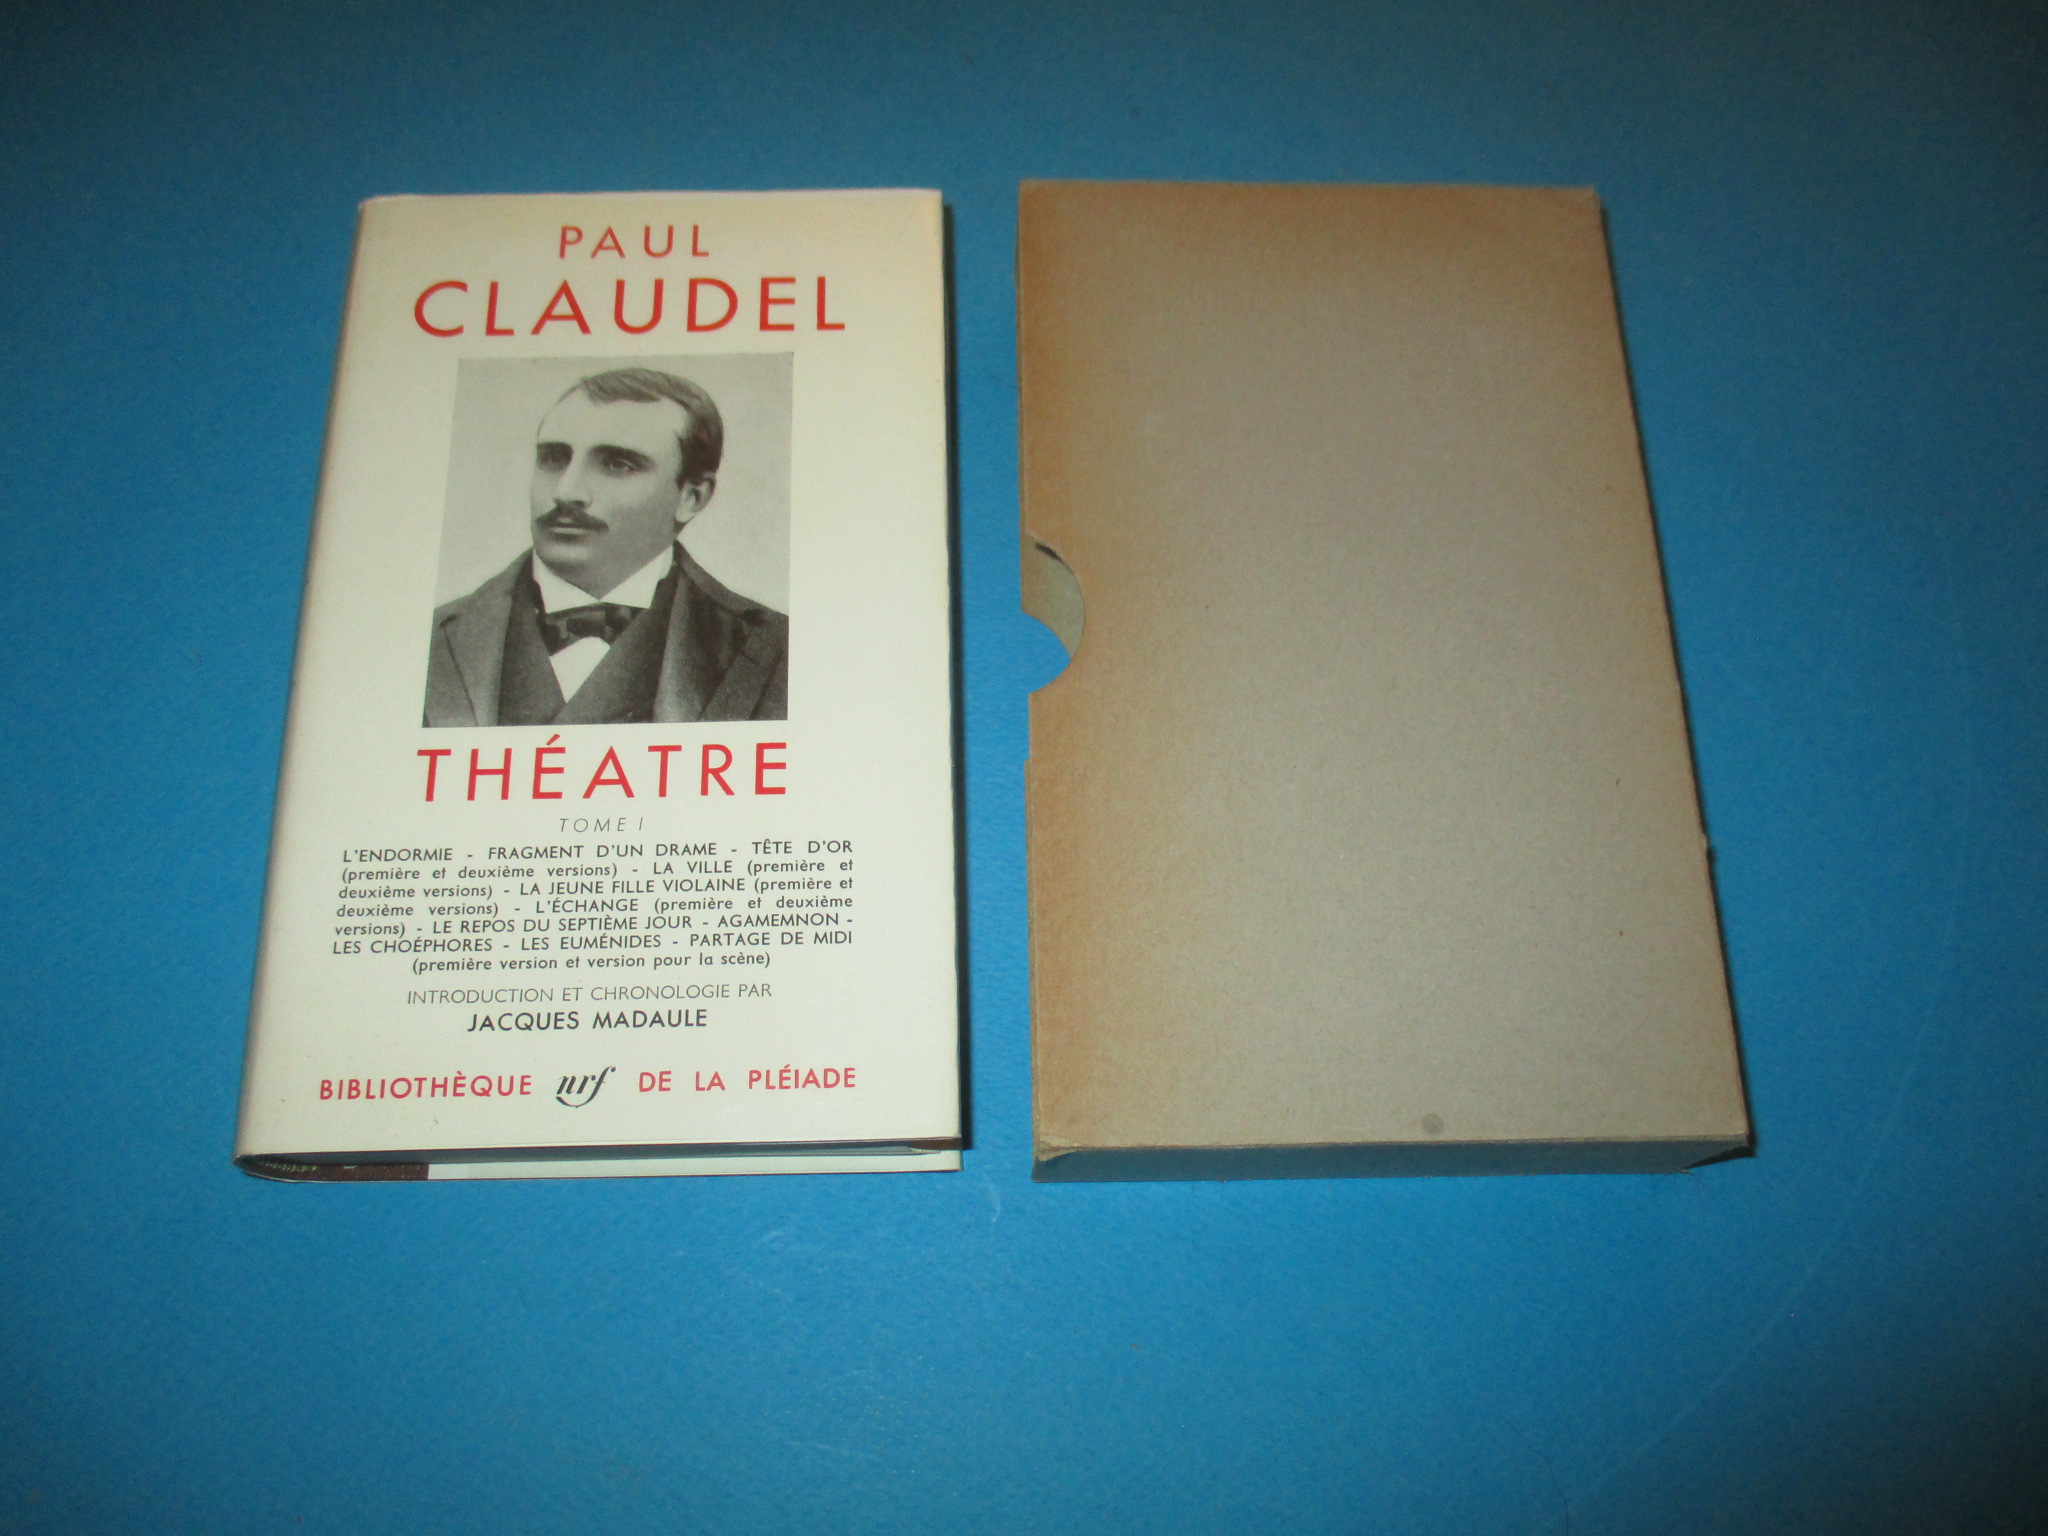 Théâtre I, tome 1, Paul Claudel, La Pléiade 1960